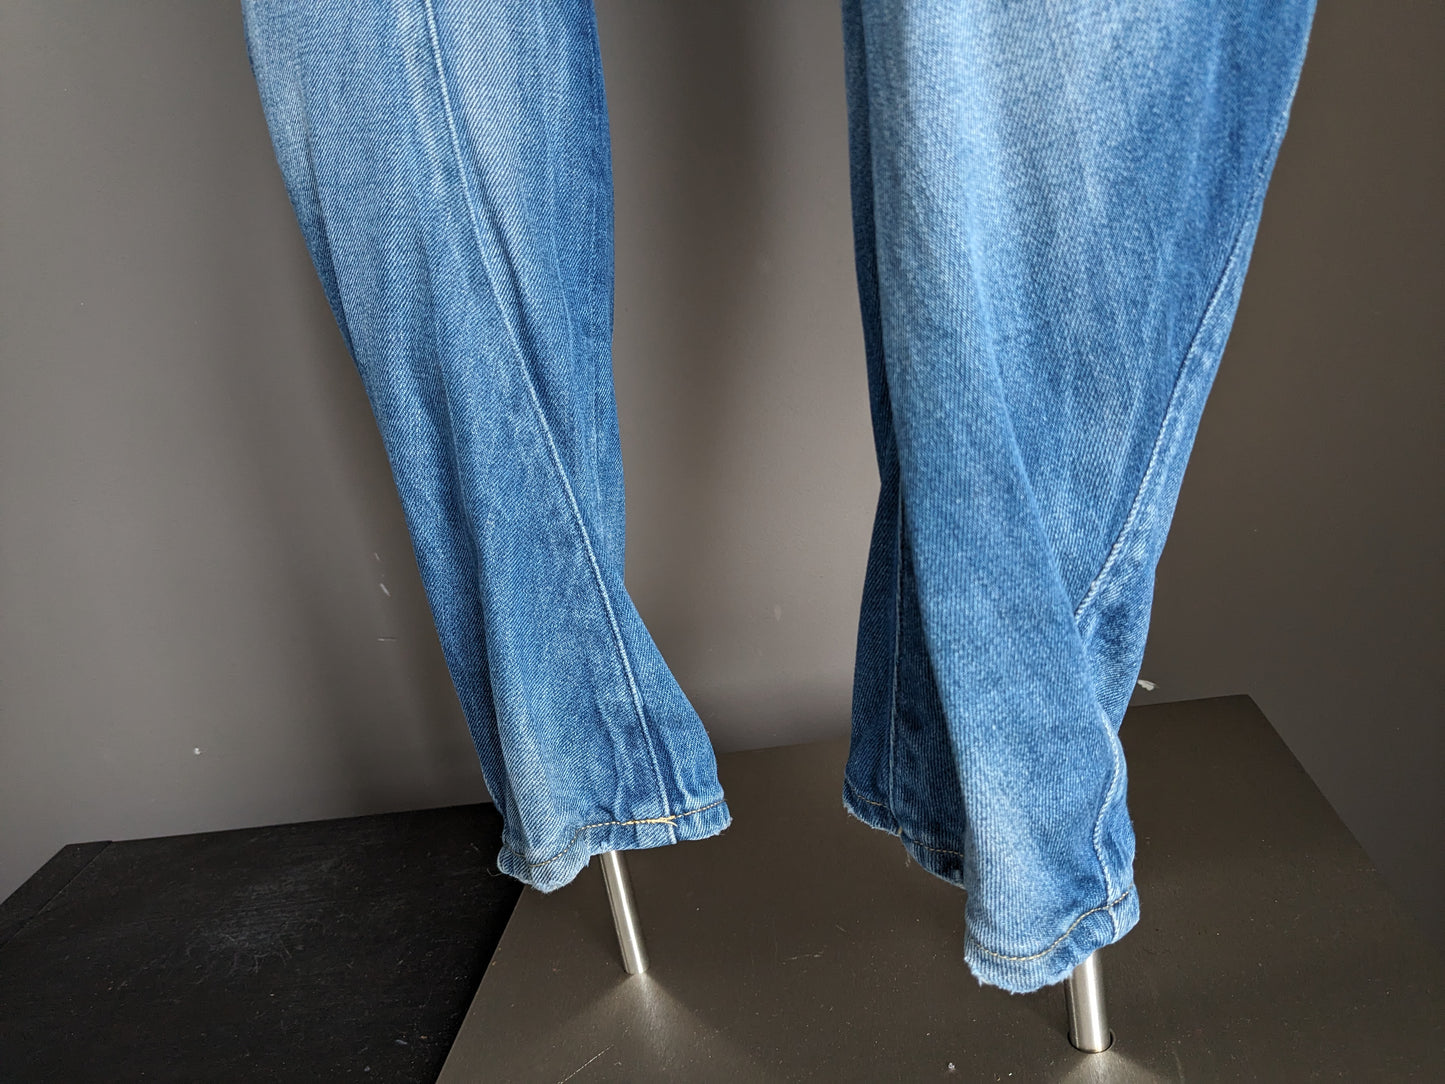 Gstar Jeans crudos. Color azul claro. Tamaño W33 - L32.